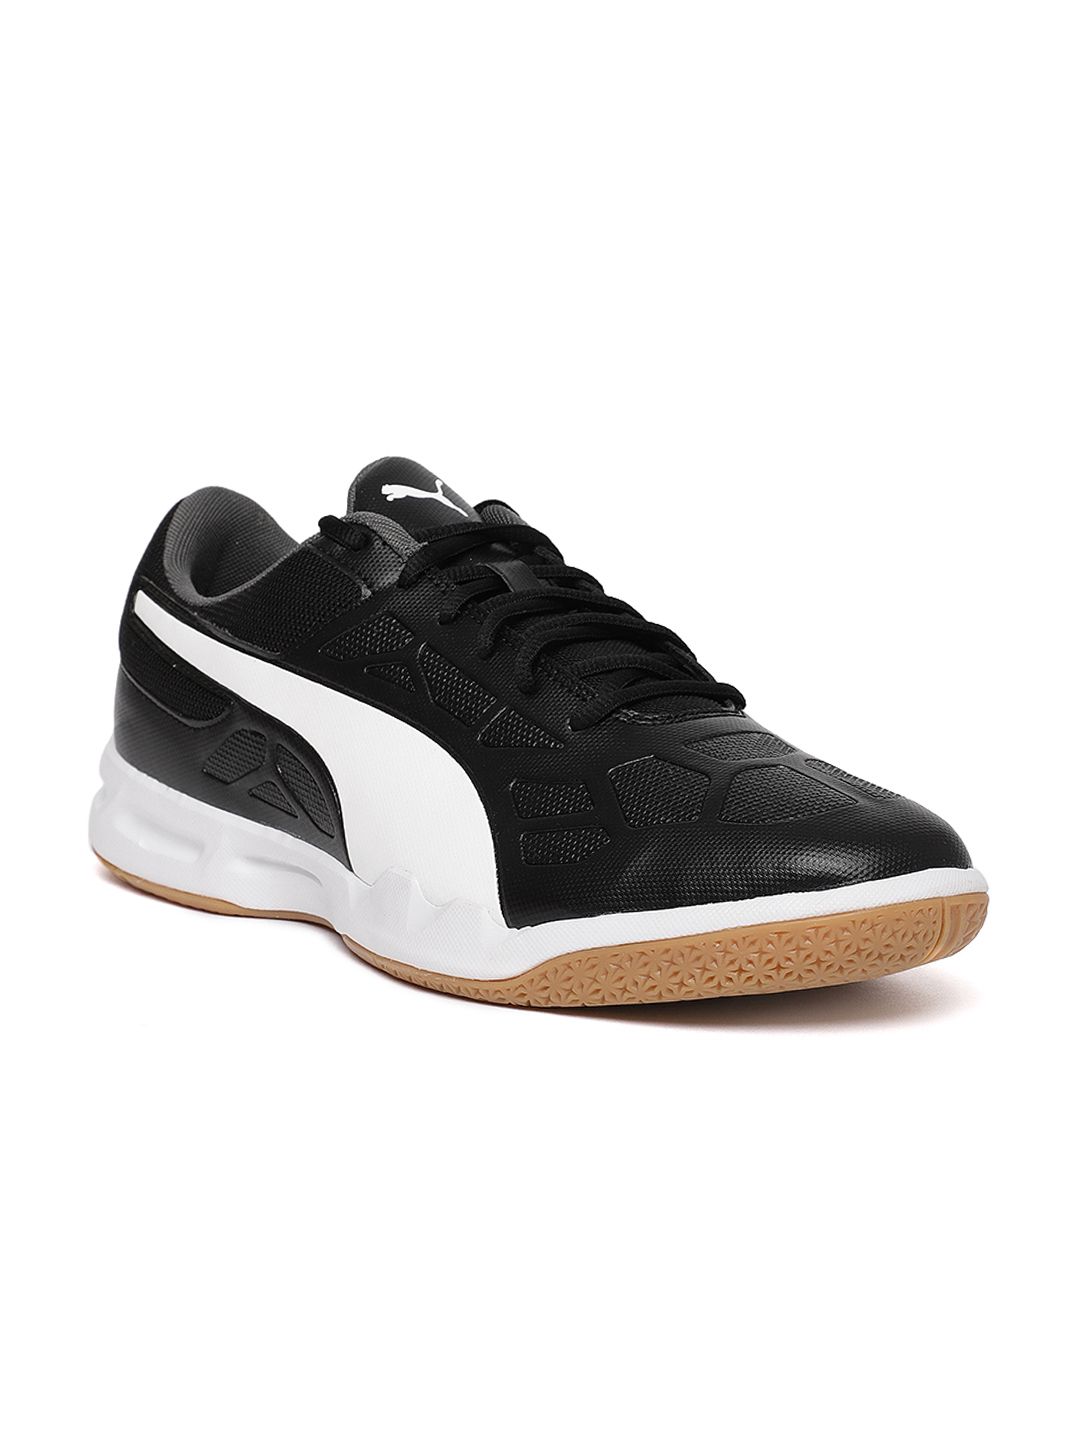 Puma Unisex Black Tenaz Badminton Shoes Price in India